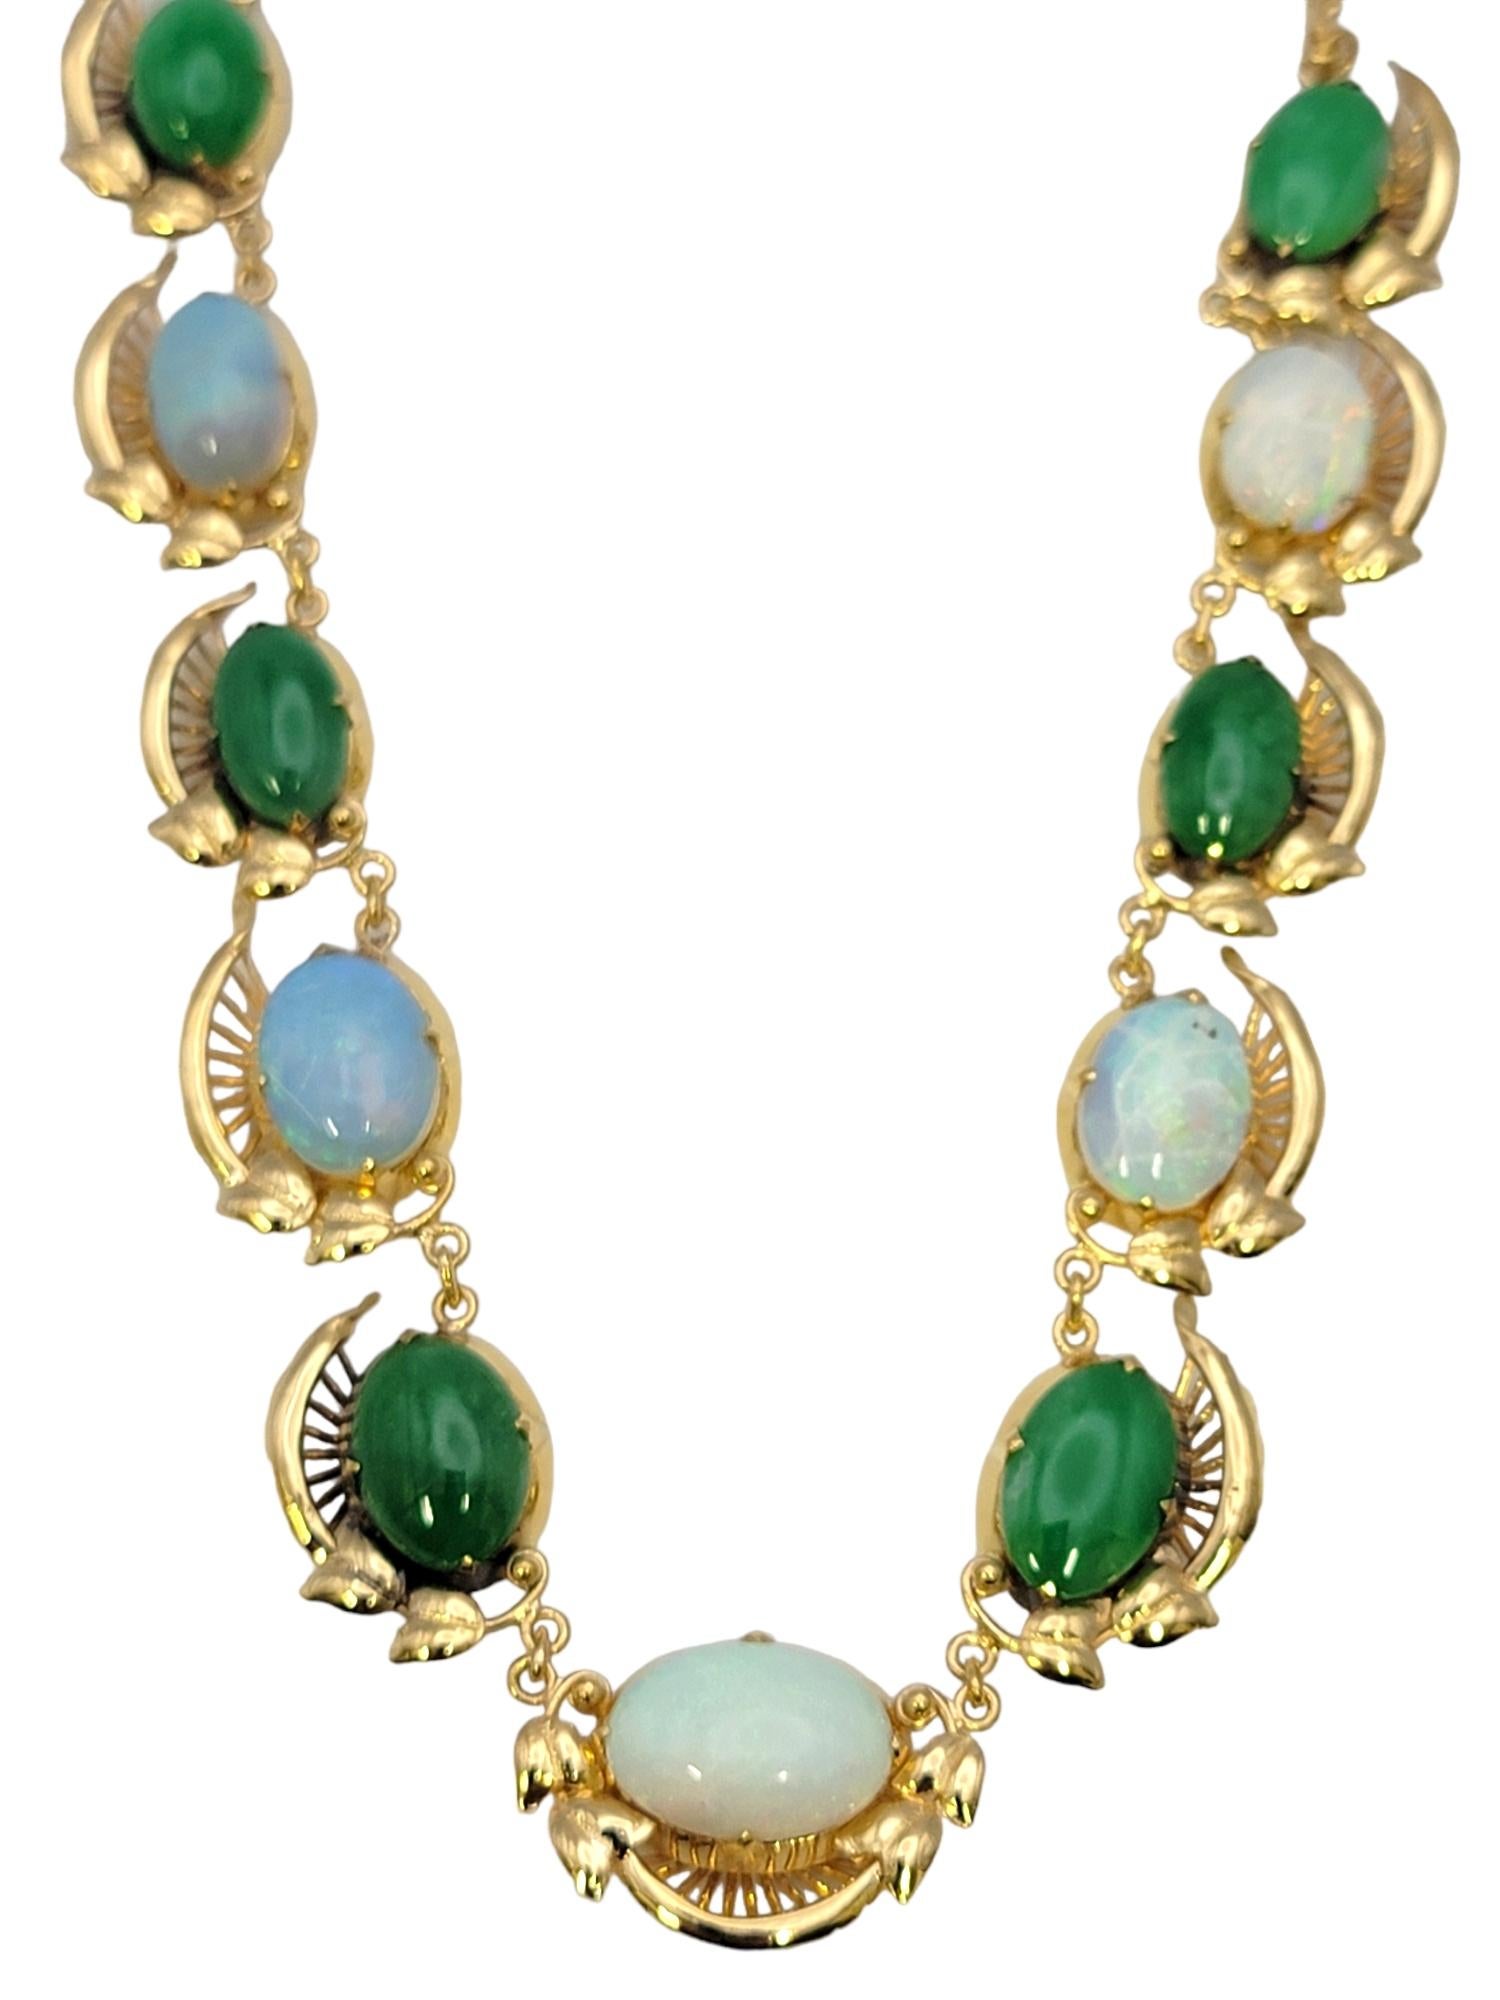 Farbenfrohe und elegante Halskette mit atemberaubenden Opal- und Jadeit-Edelsteinen. Jeder der wunderschön gestreiften Natursteine hat seine eigene, einzigartige Farbe und sein eigenes Design, wodurch ein wirklich einzigartiges Stück entsteht.  
